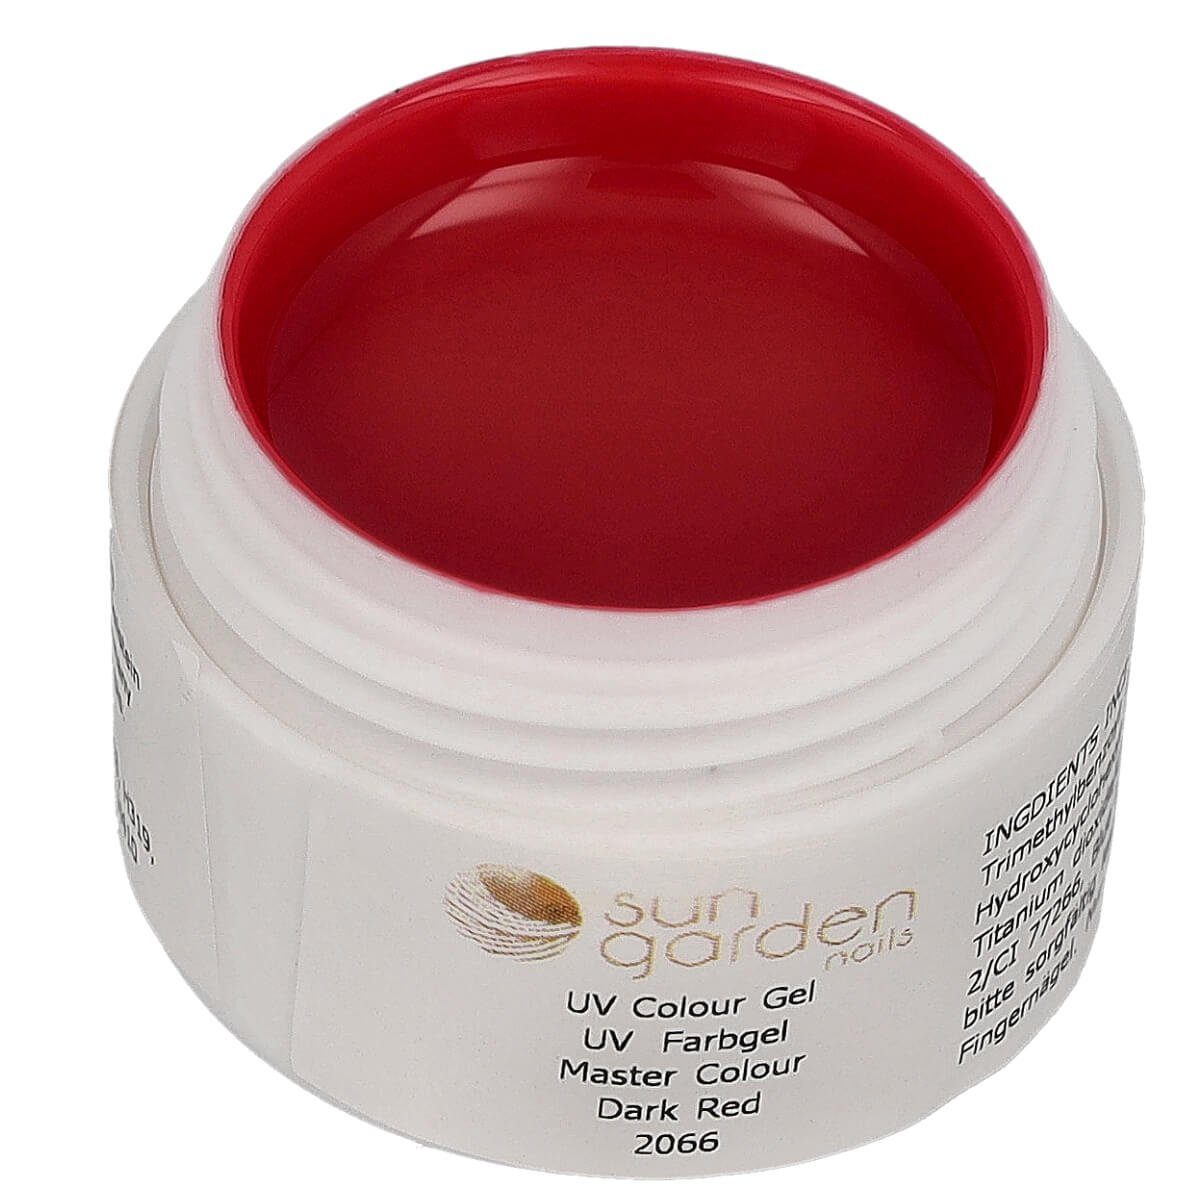 Sun Garden Nails UV-Gel Master Color - Supreme Line N°2066 Dark Red 5ml - UV Color Gel